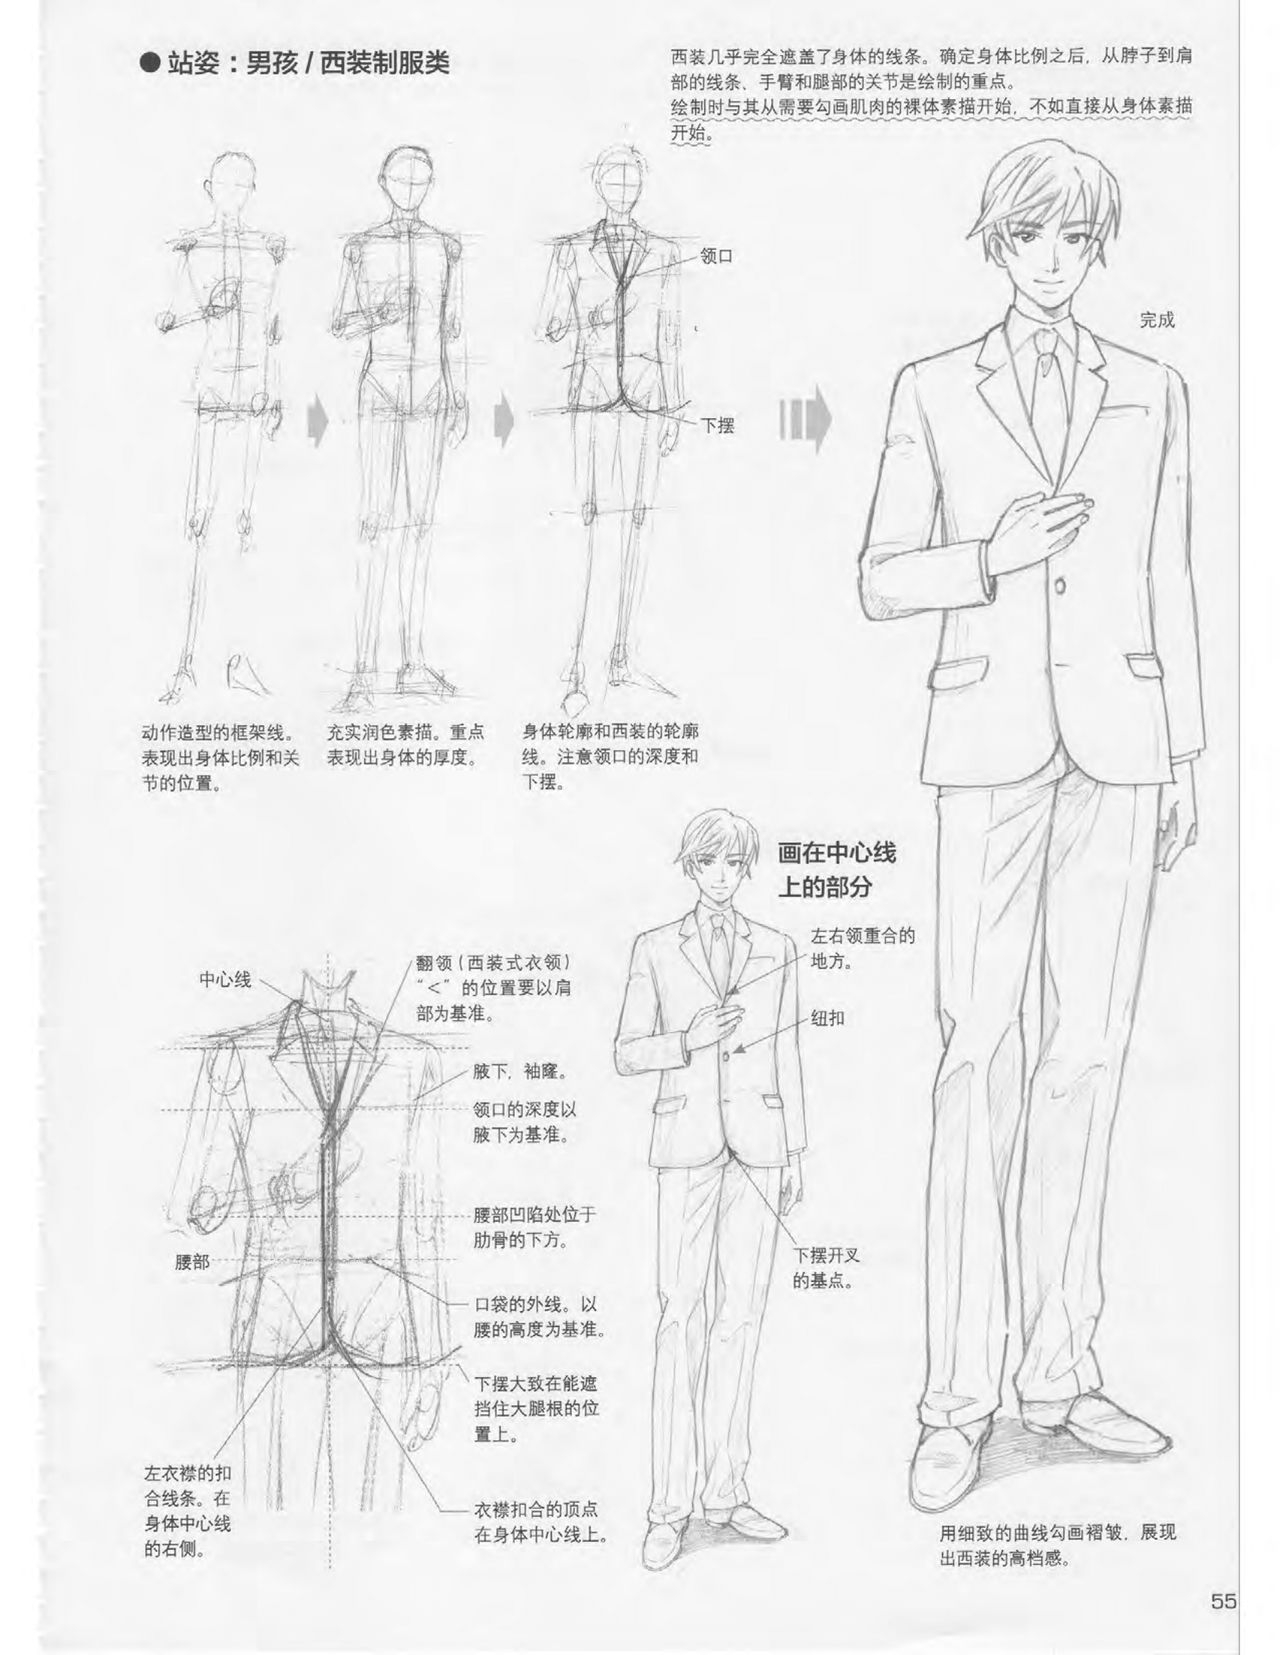 Japanese Manga Master Lecture 3: Lin Akira and Kakumaru Maru Talk About Glamorous Character Modeling 55